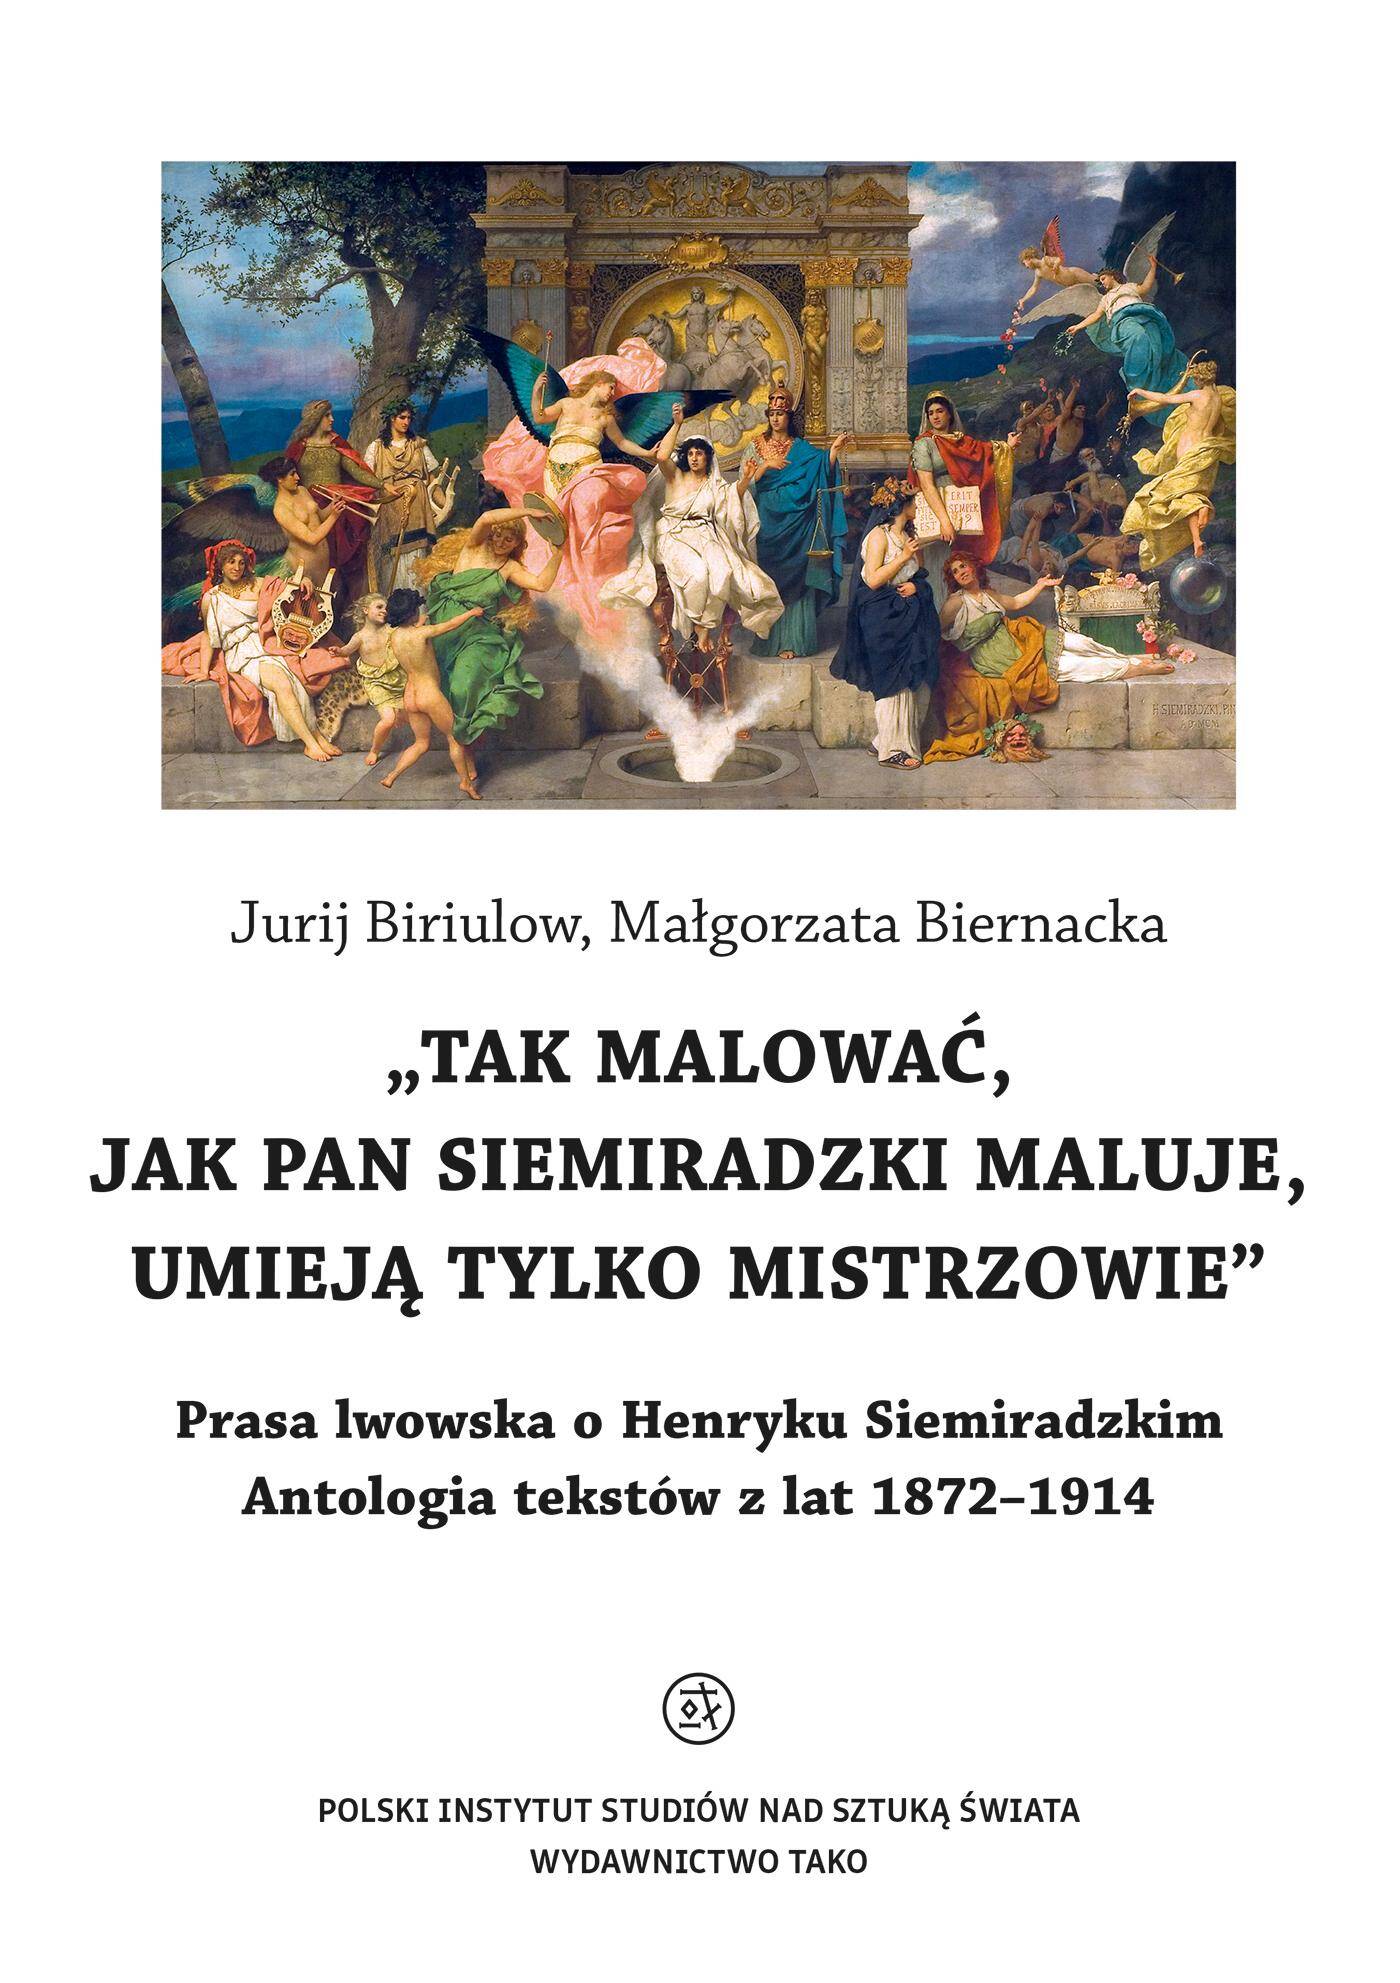 O Henryku Siemiradzkim. Antologia tekstów z lat 1872-1914